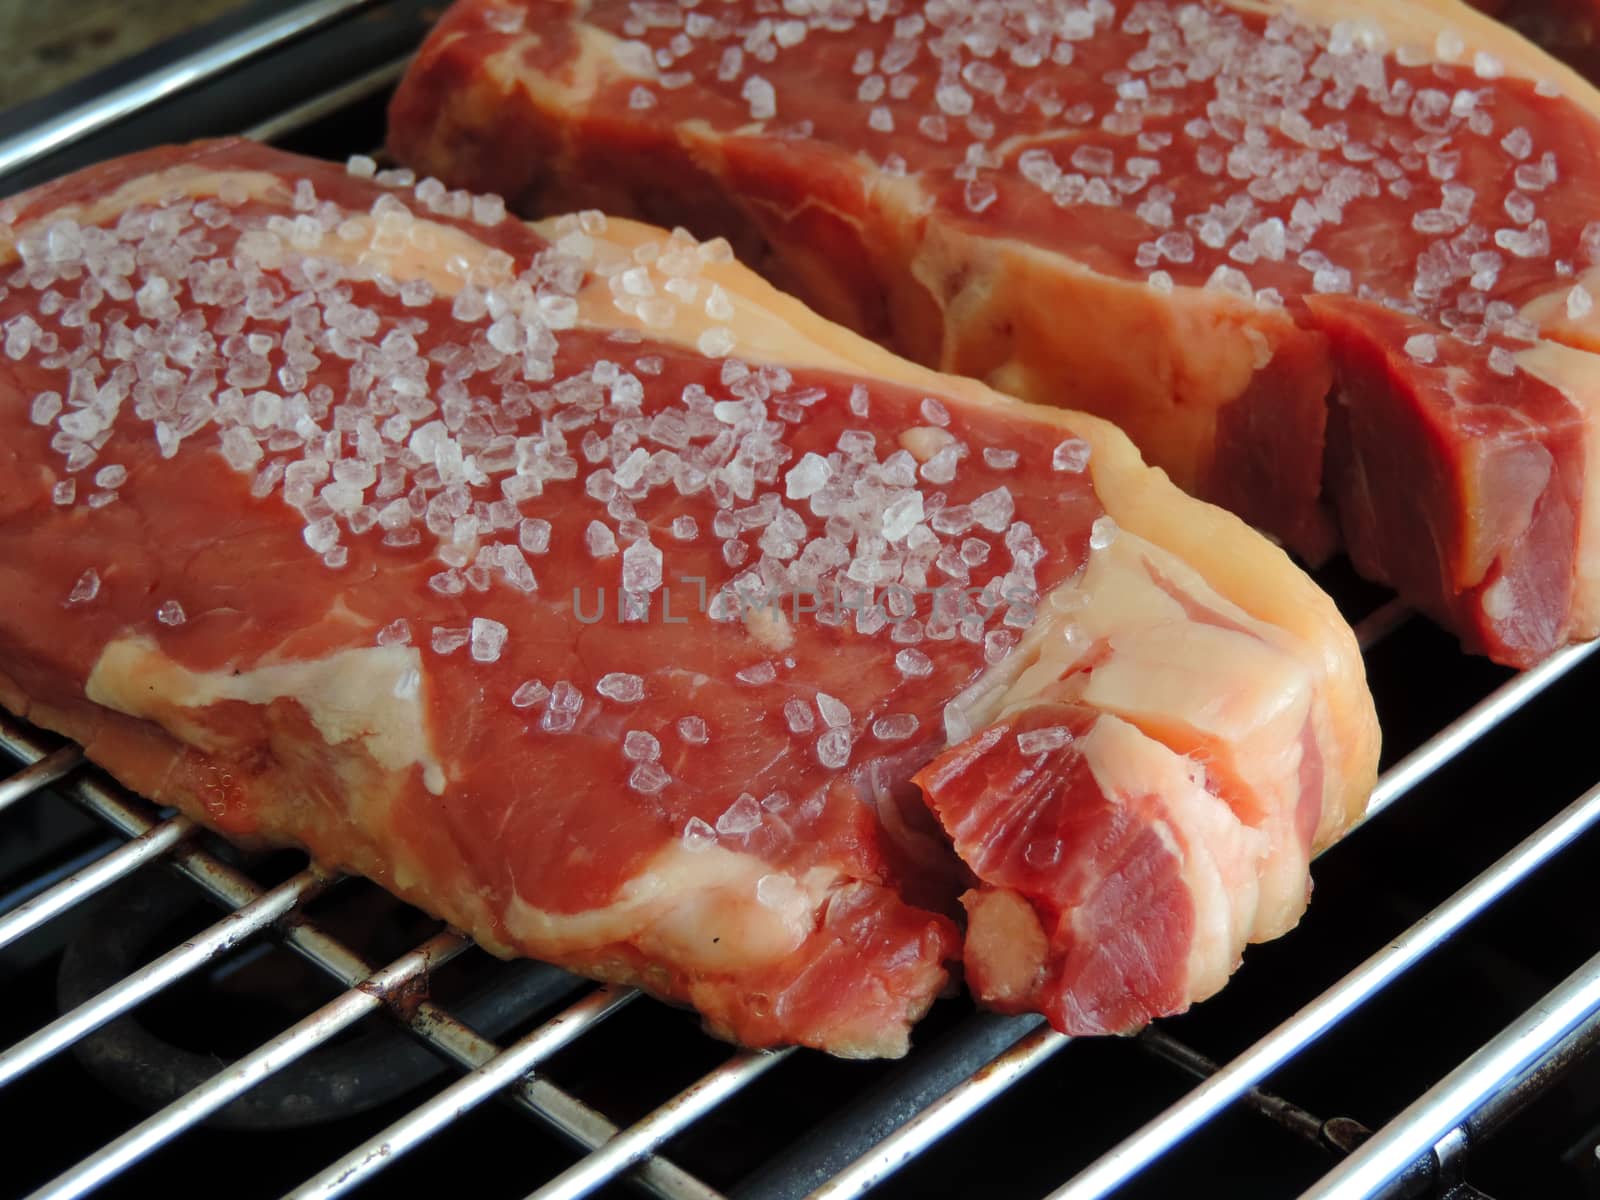 Raw beef steak with salt by luisrftc